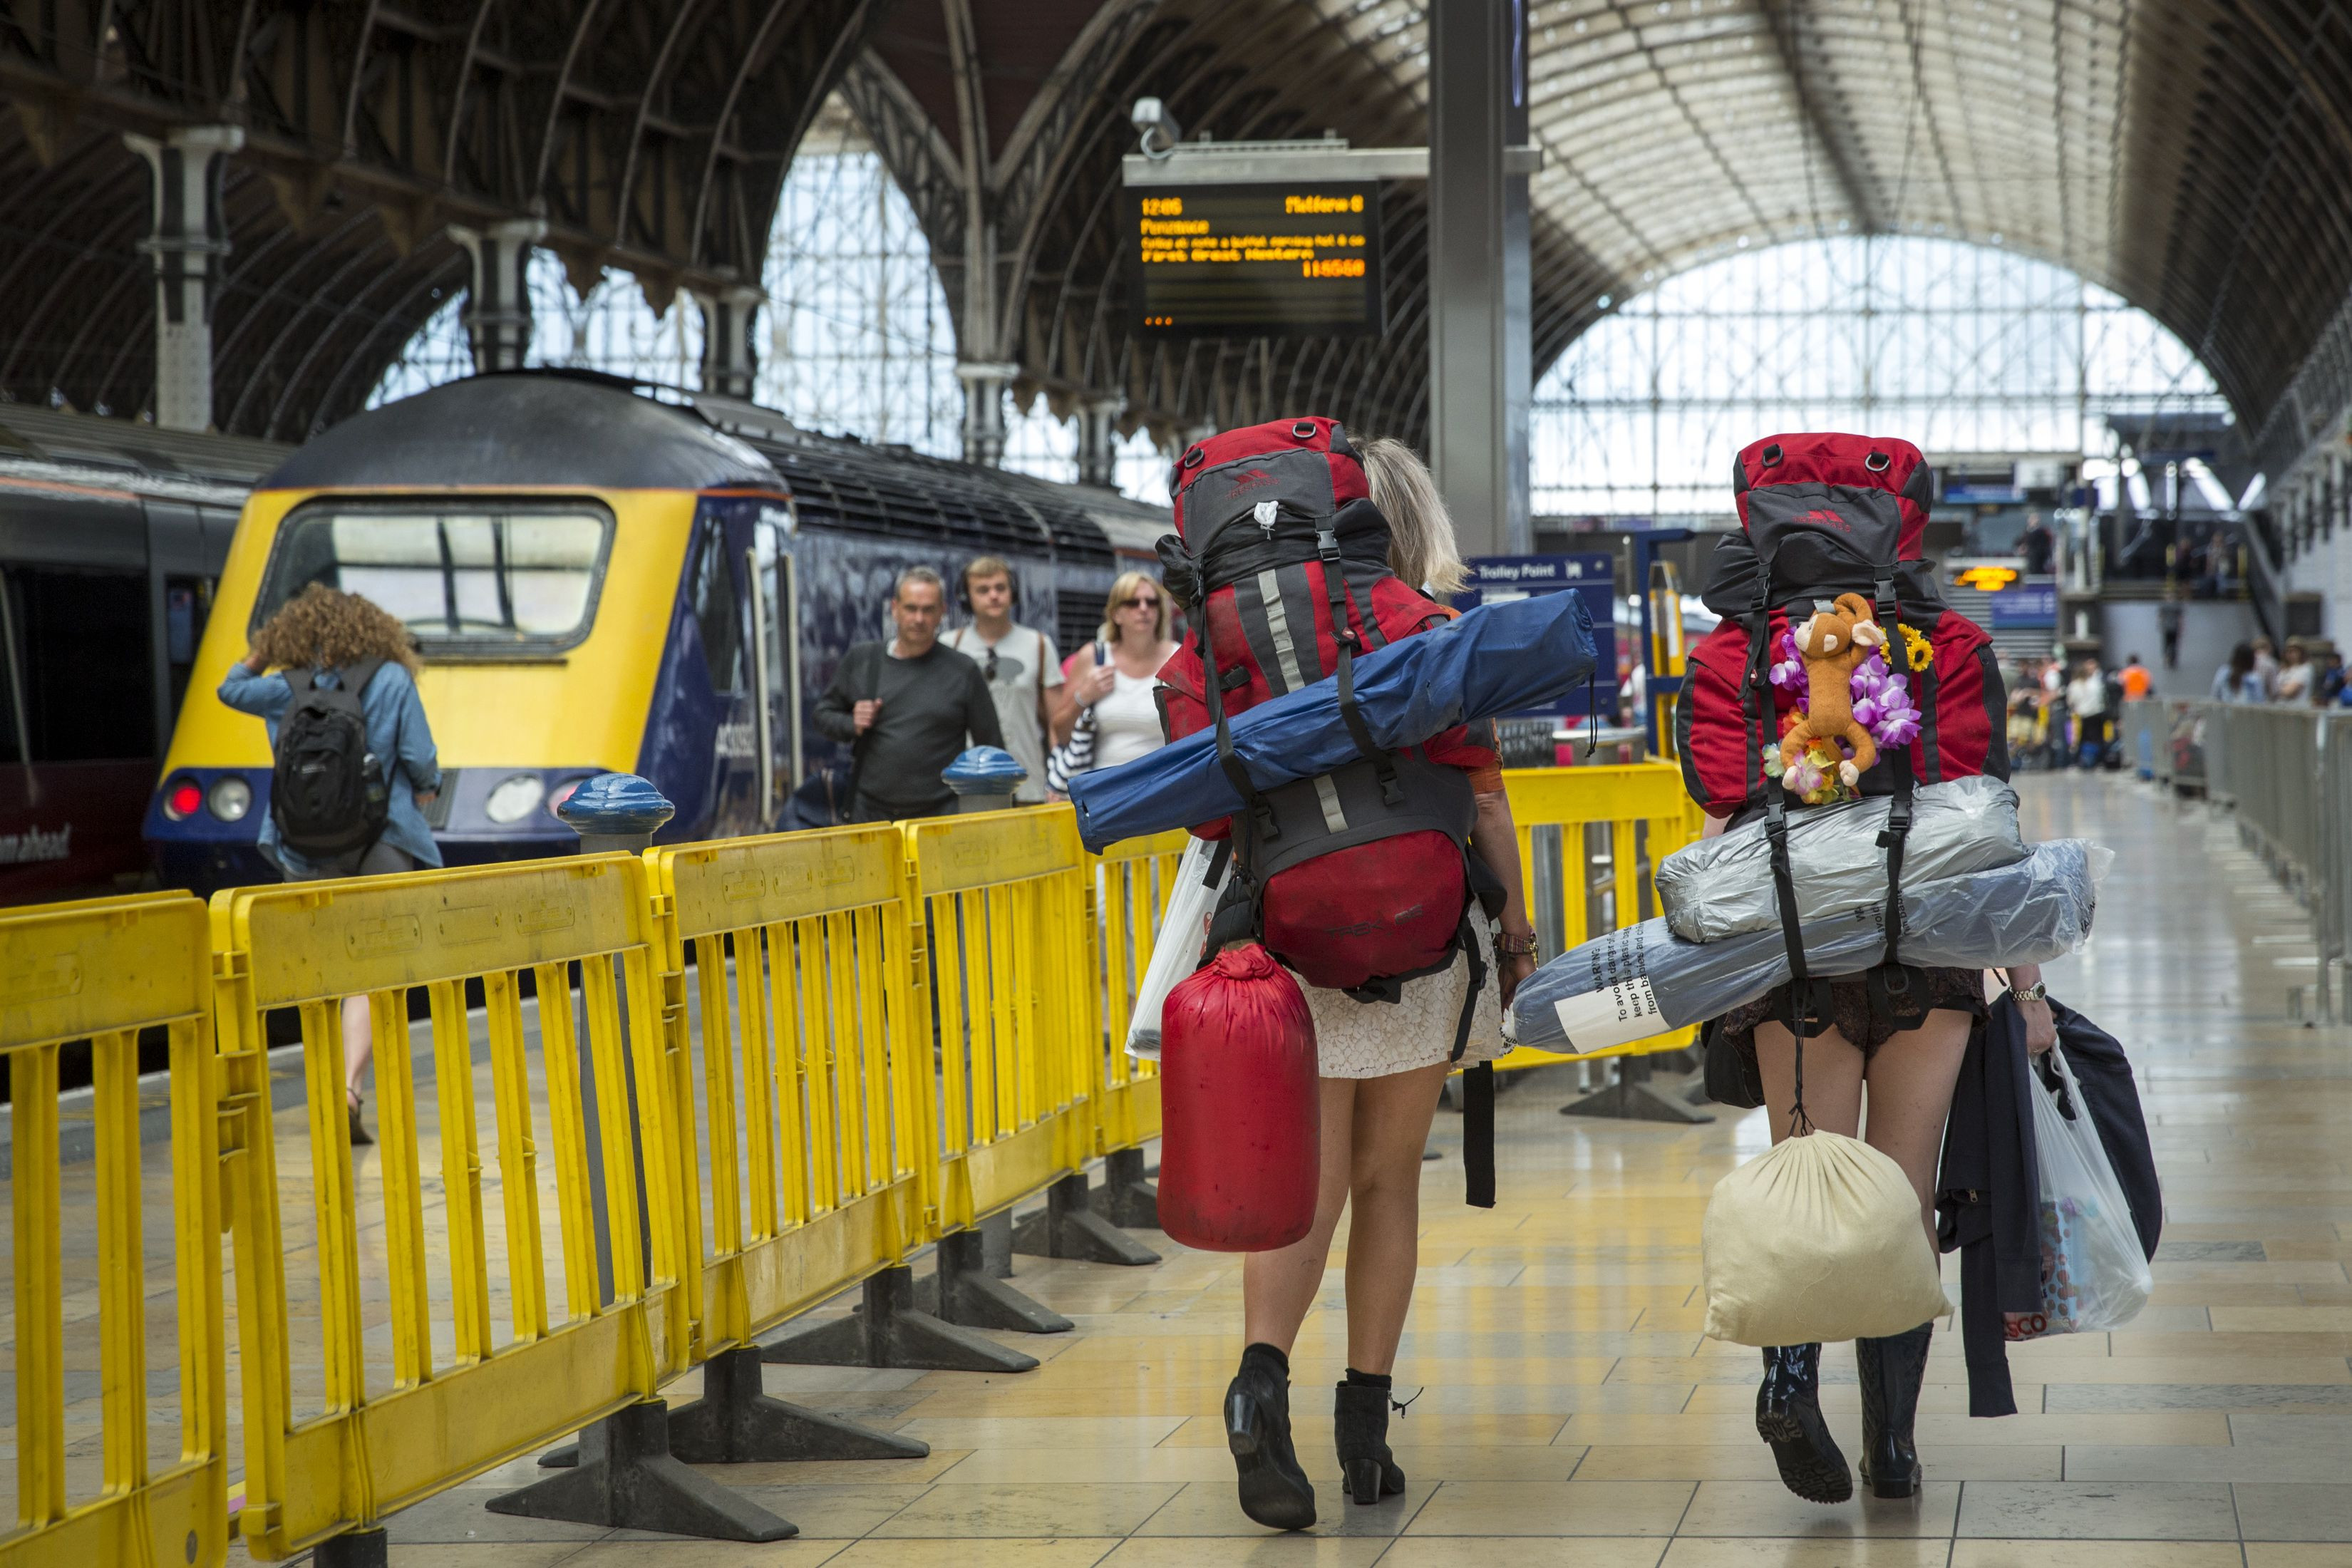 Δωρεάν εισιτήρια Interrail για 18χρονους Ευρωπαίους αυτό το καλοκαίρι